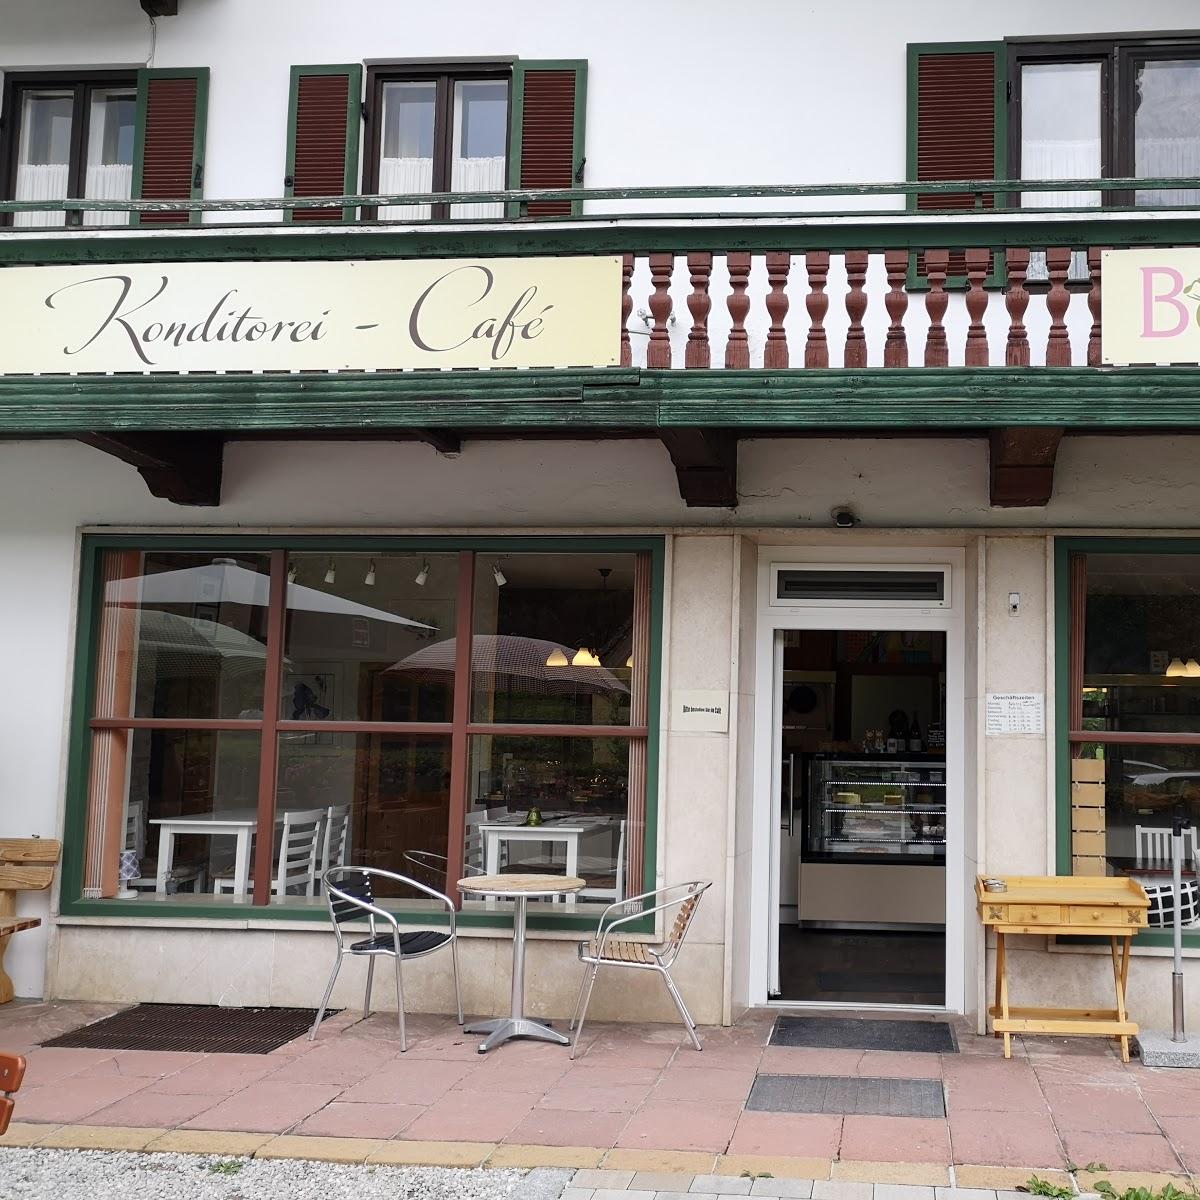 Restaurant "Grillkuchl" in  Österreich